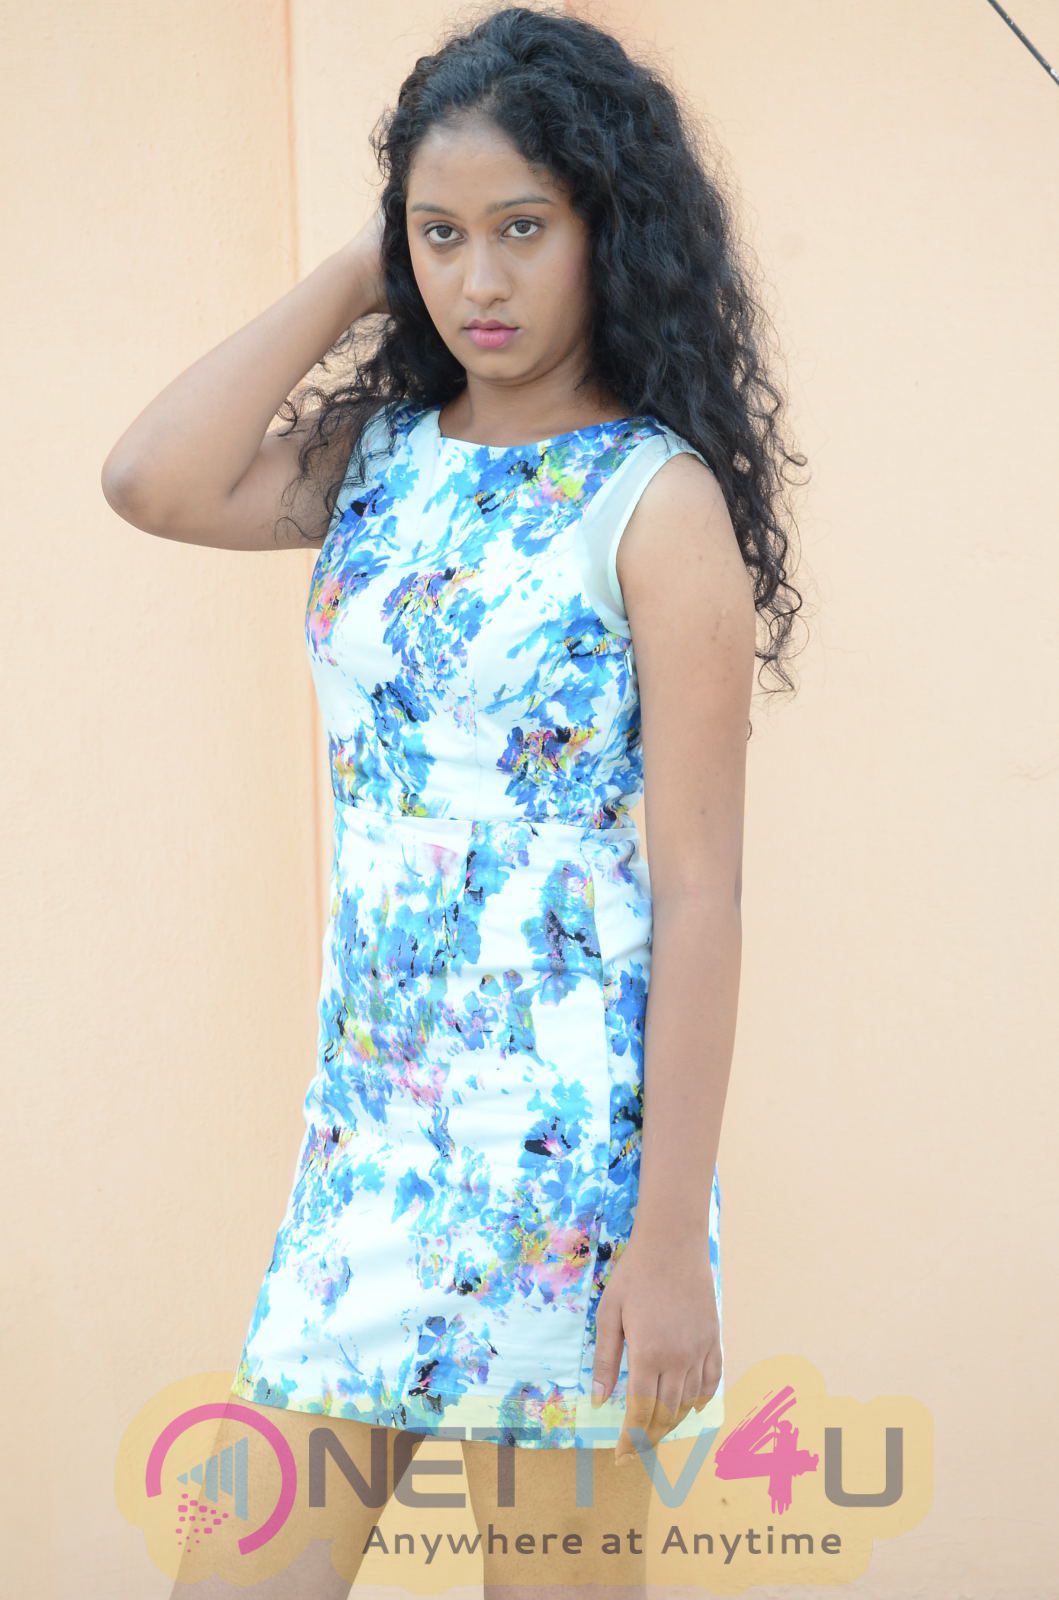 Telugu Actress Priyanka Photoshoot Images Telugu Gallery